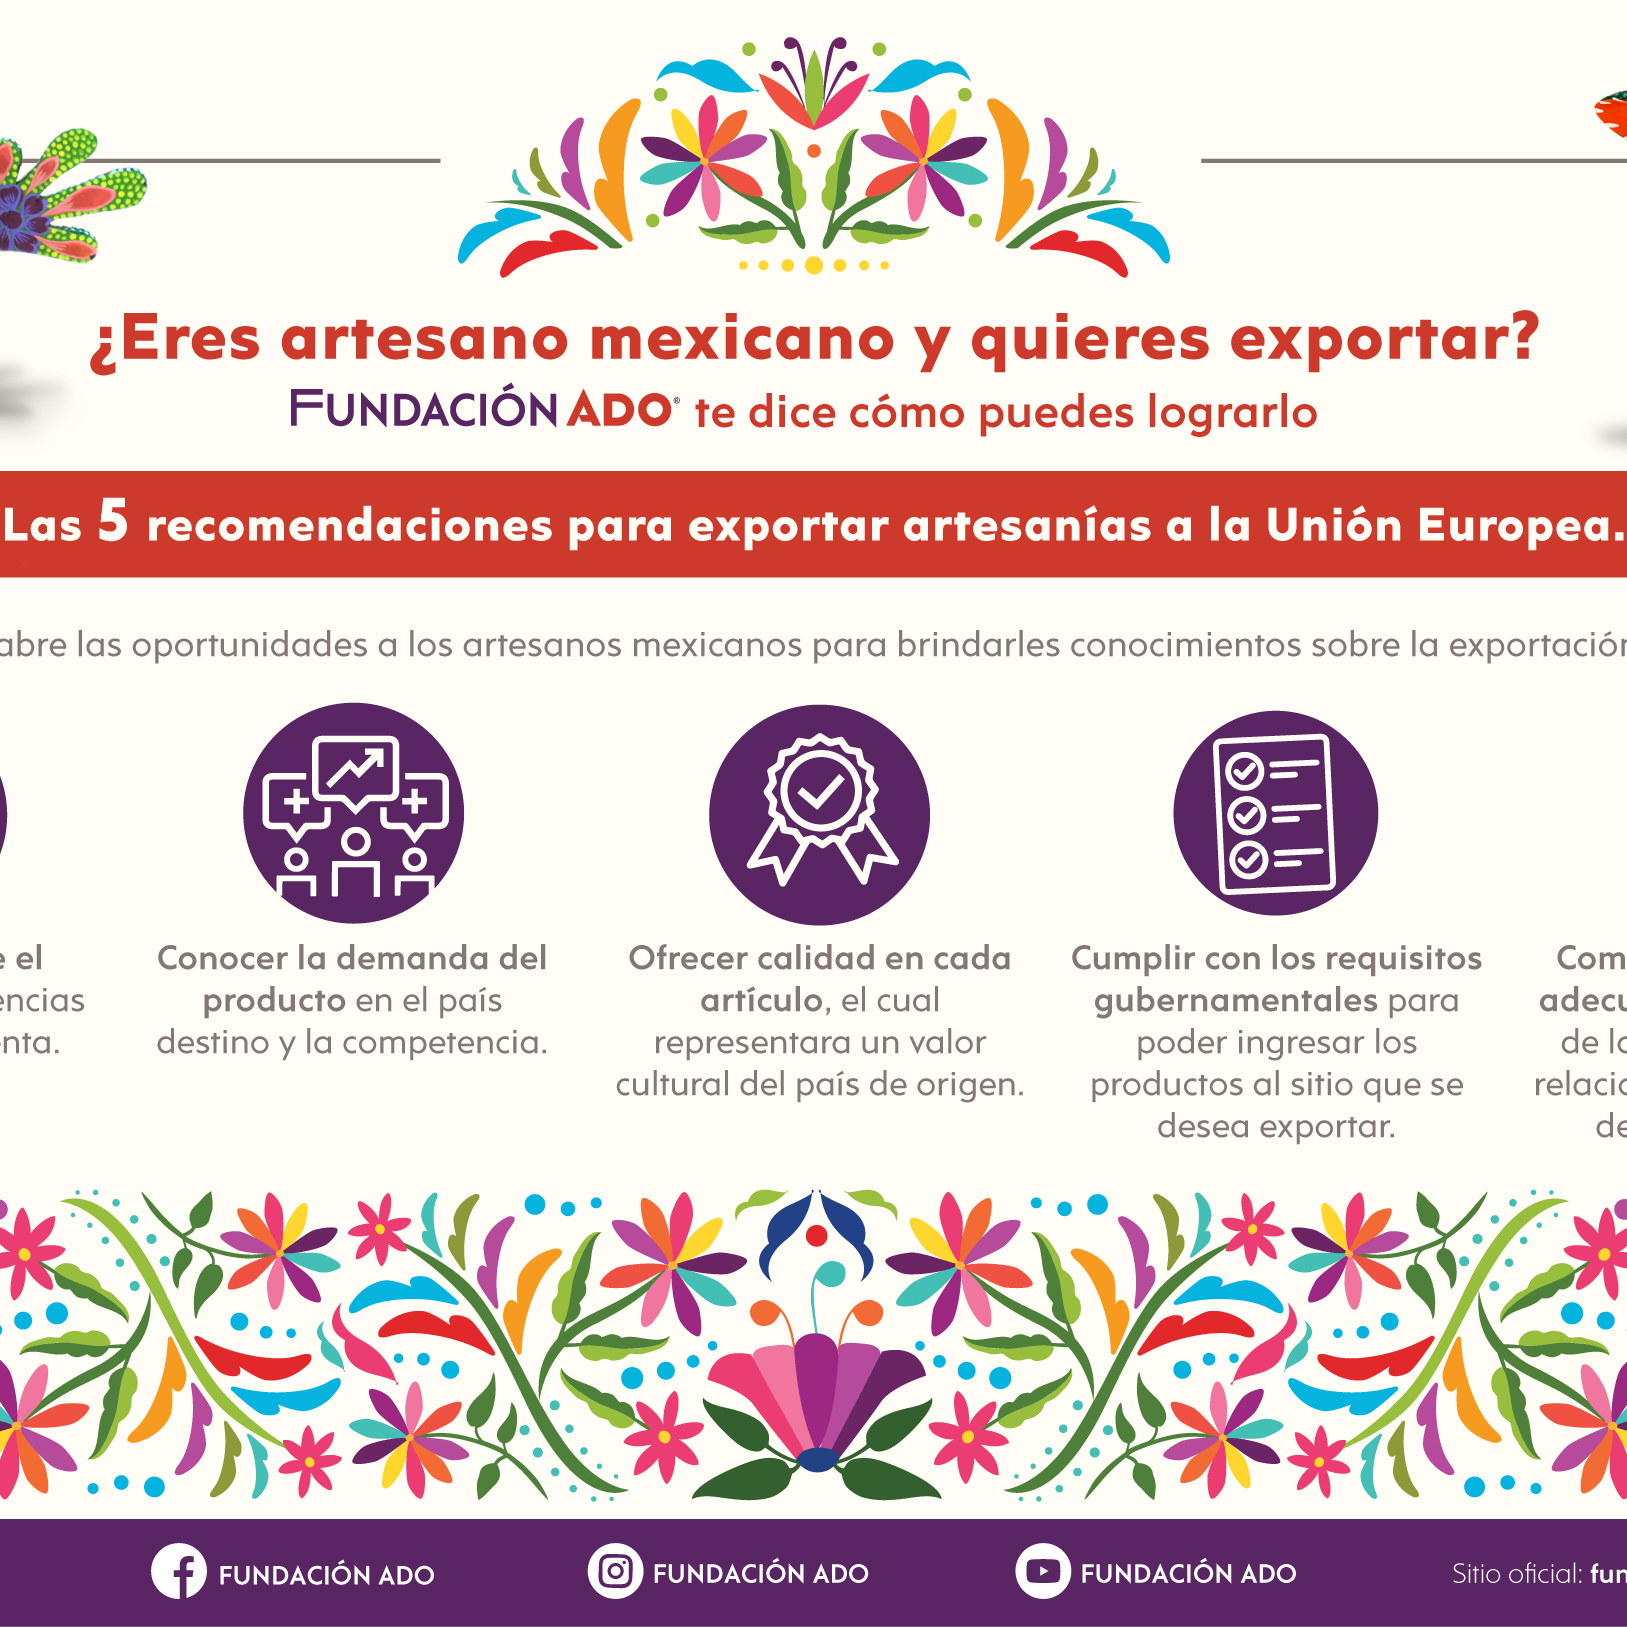 “Expandir el comercio justo es una oportunidad para los artesanos mexicanos”: FUNDACIÓN ADO 